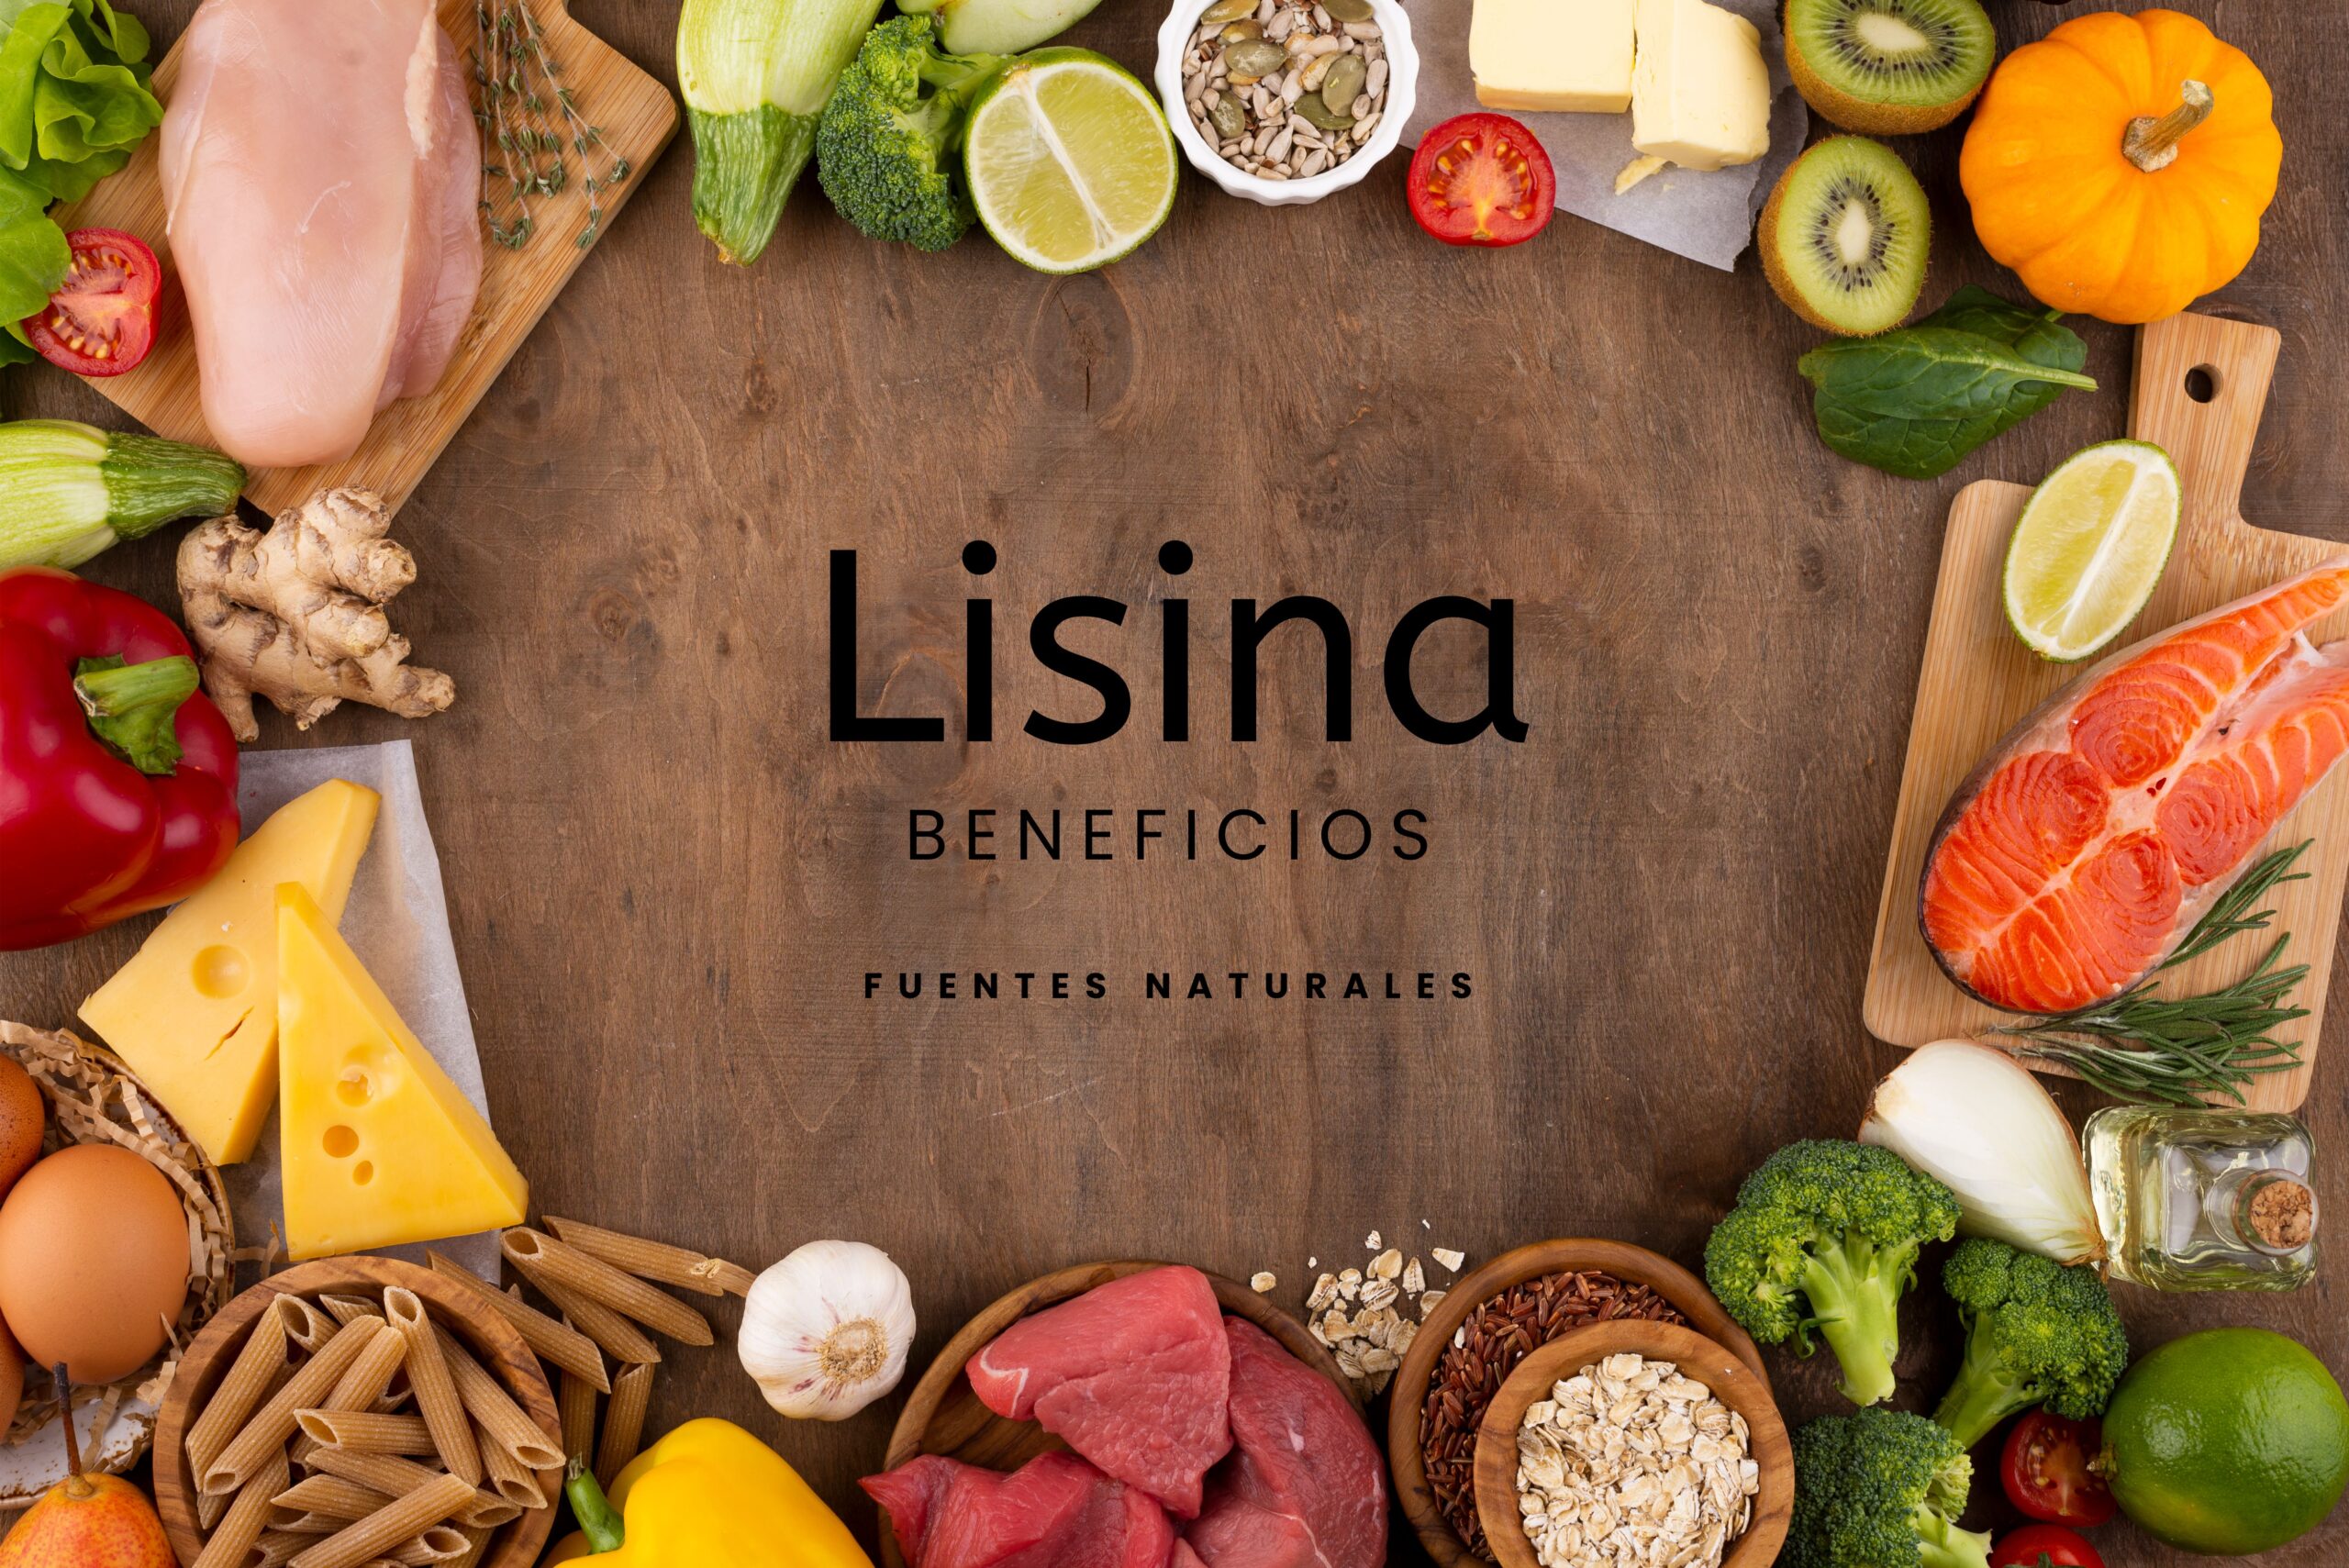 Lisina: Beneficios y fuentes naturales